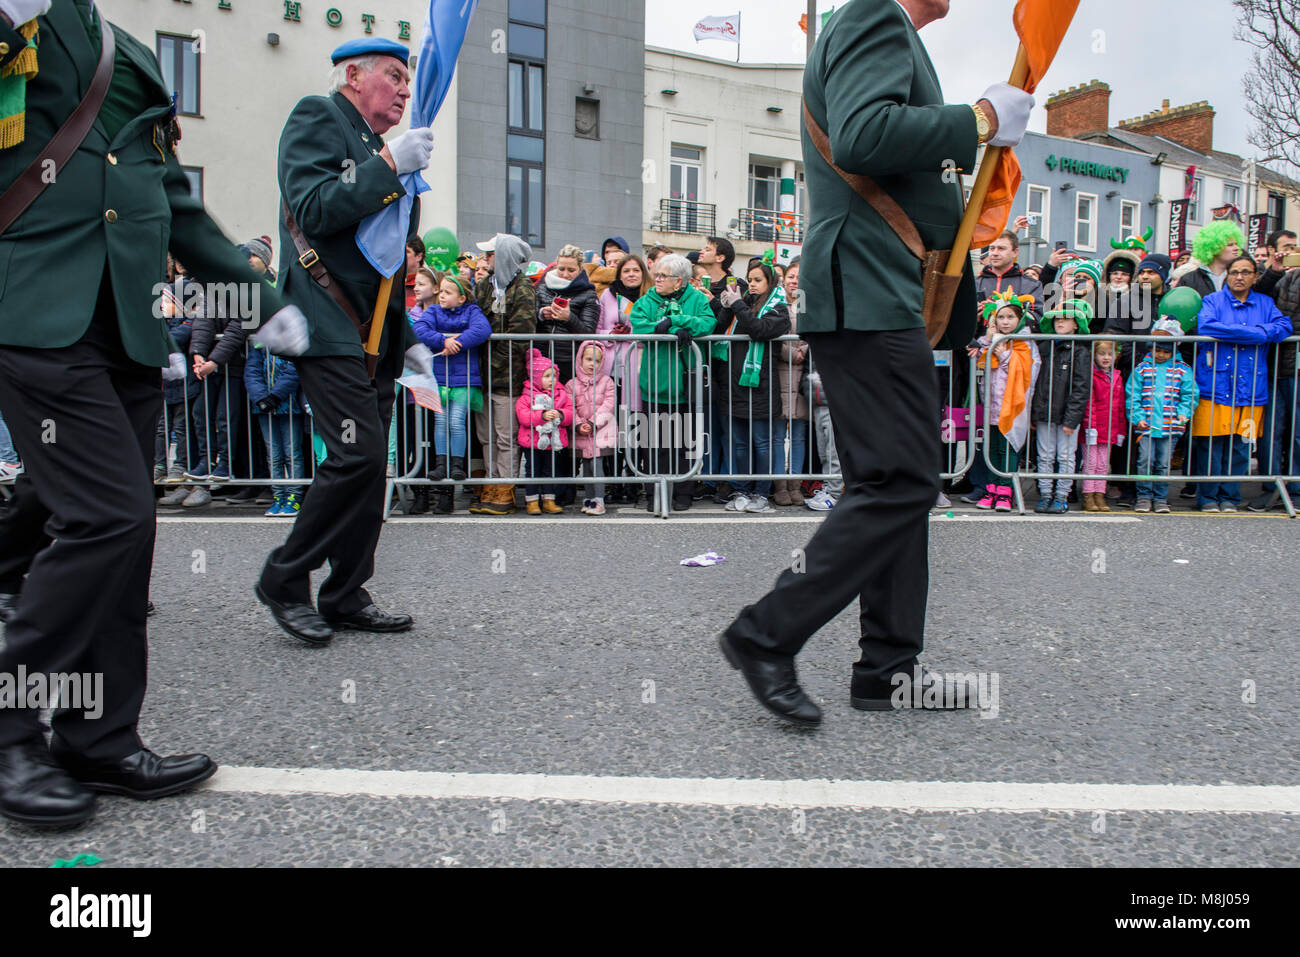 Días laborables Marinero Volar cometa Los participantes de la reunión anual de St Patrick's Day Parade celebra la  fiesta nacional de Irlanda y la patrona de Irlanda el sábado, 17 de marzo  de 2017, Galway, Irlanda.Día de